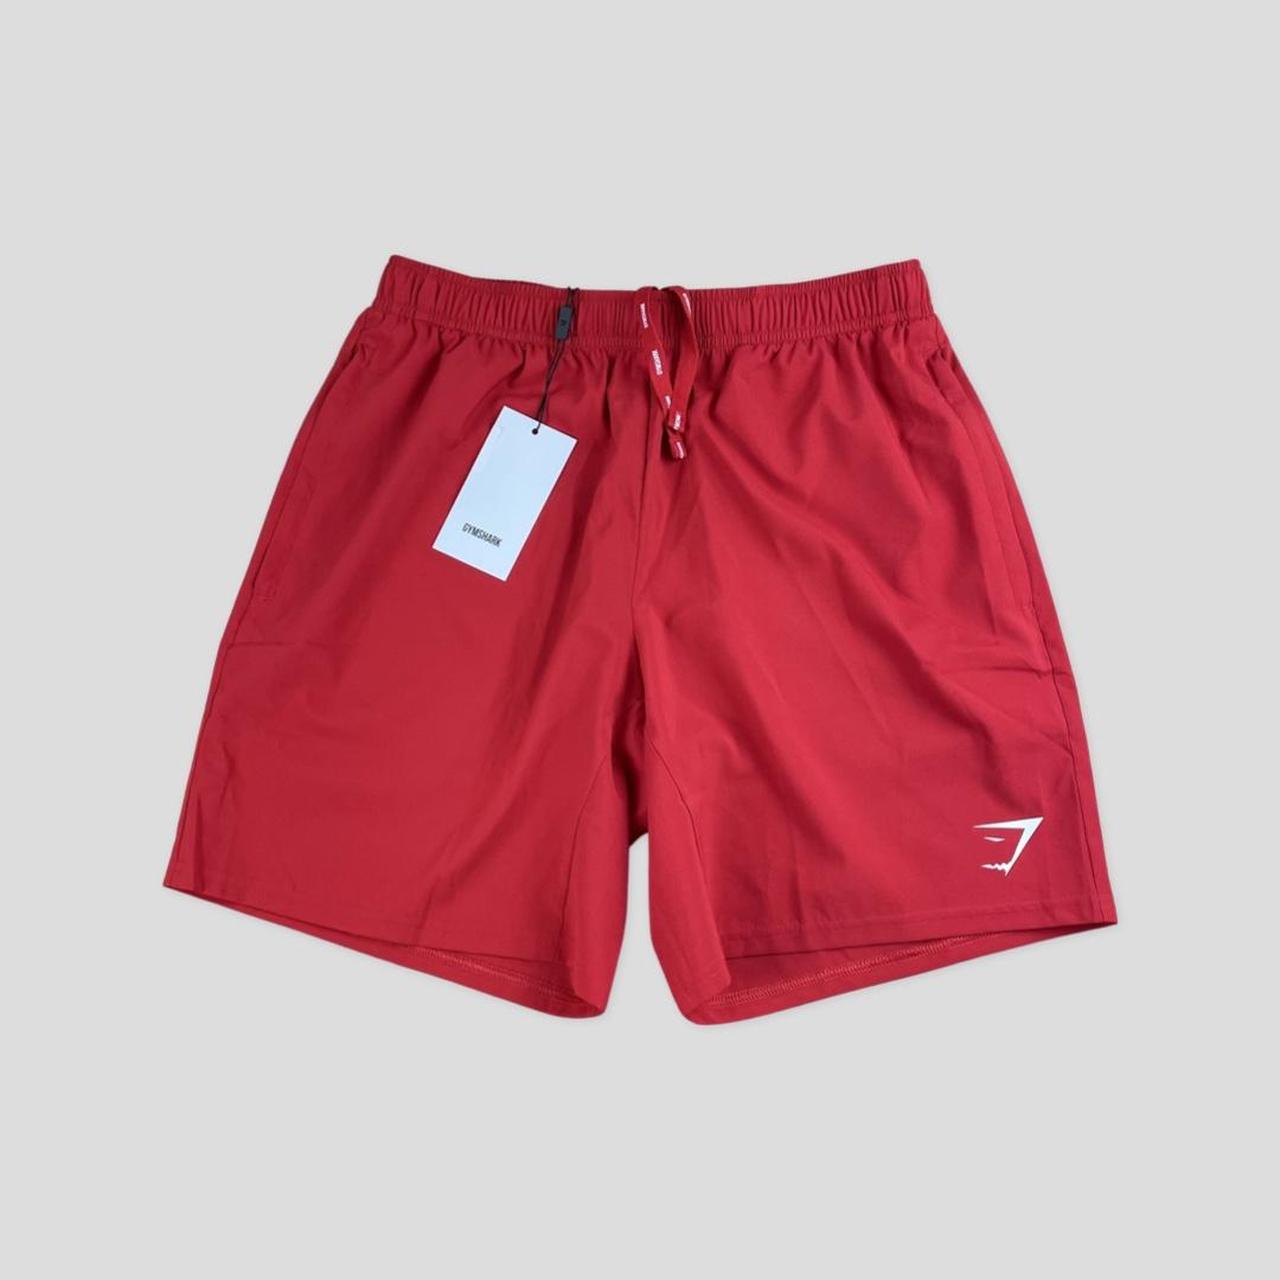 Gymshark arrival shorts red, zip pockets,... - Depop